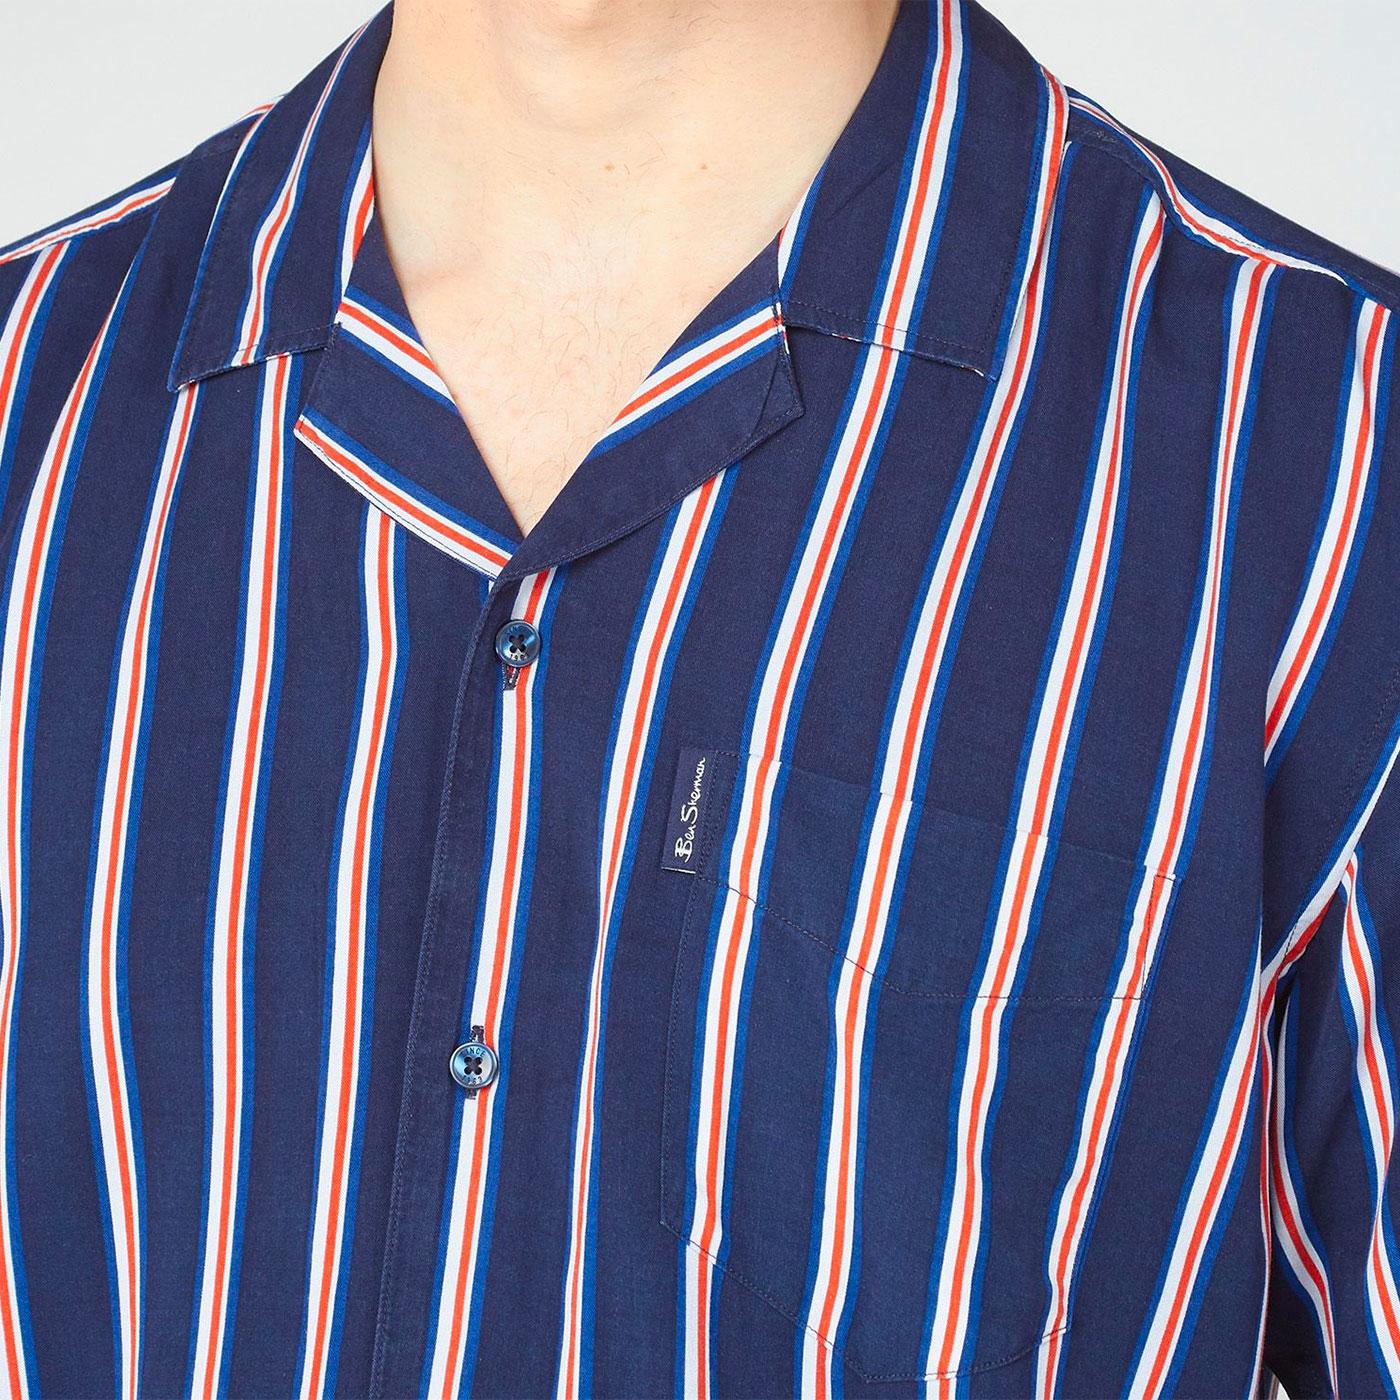 BEN SHERMAN x Team GB Olympics Resort Collar Stripe Shirt